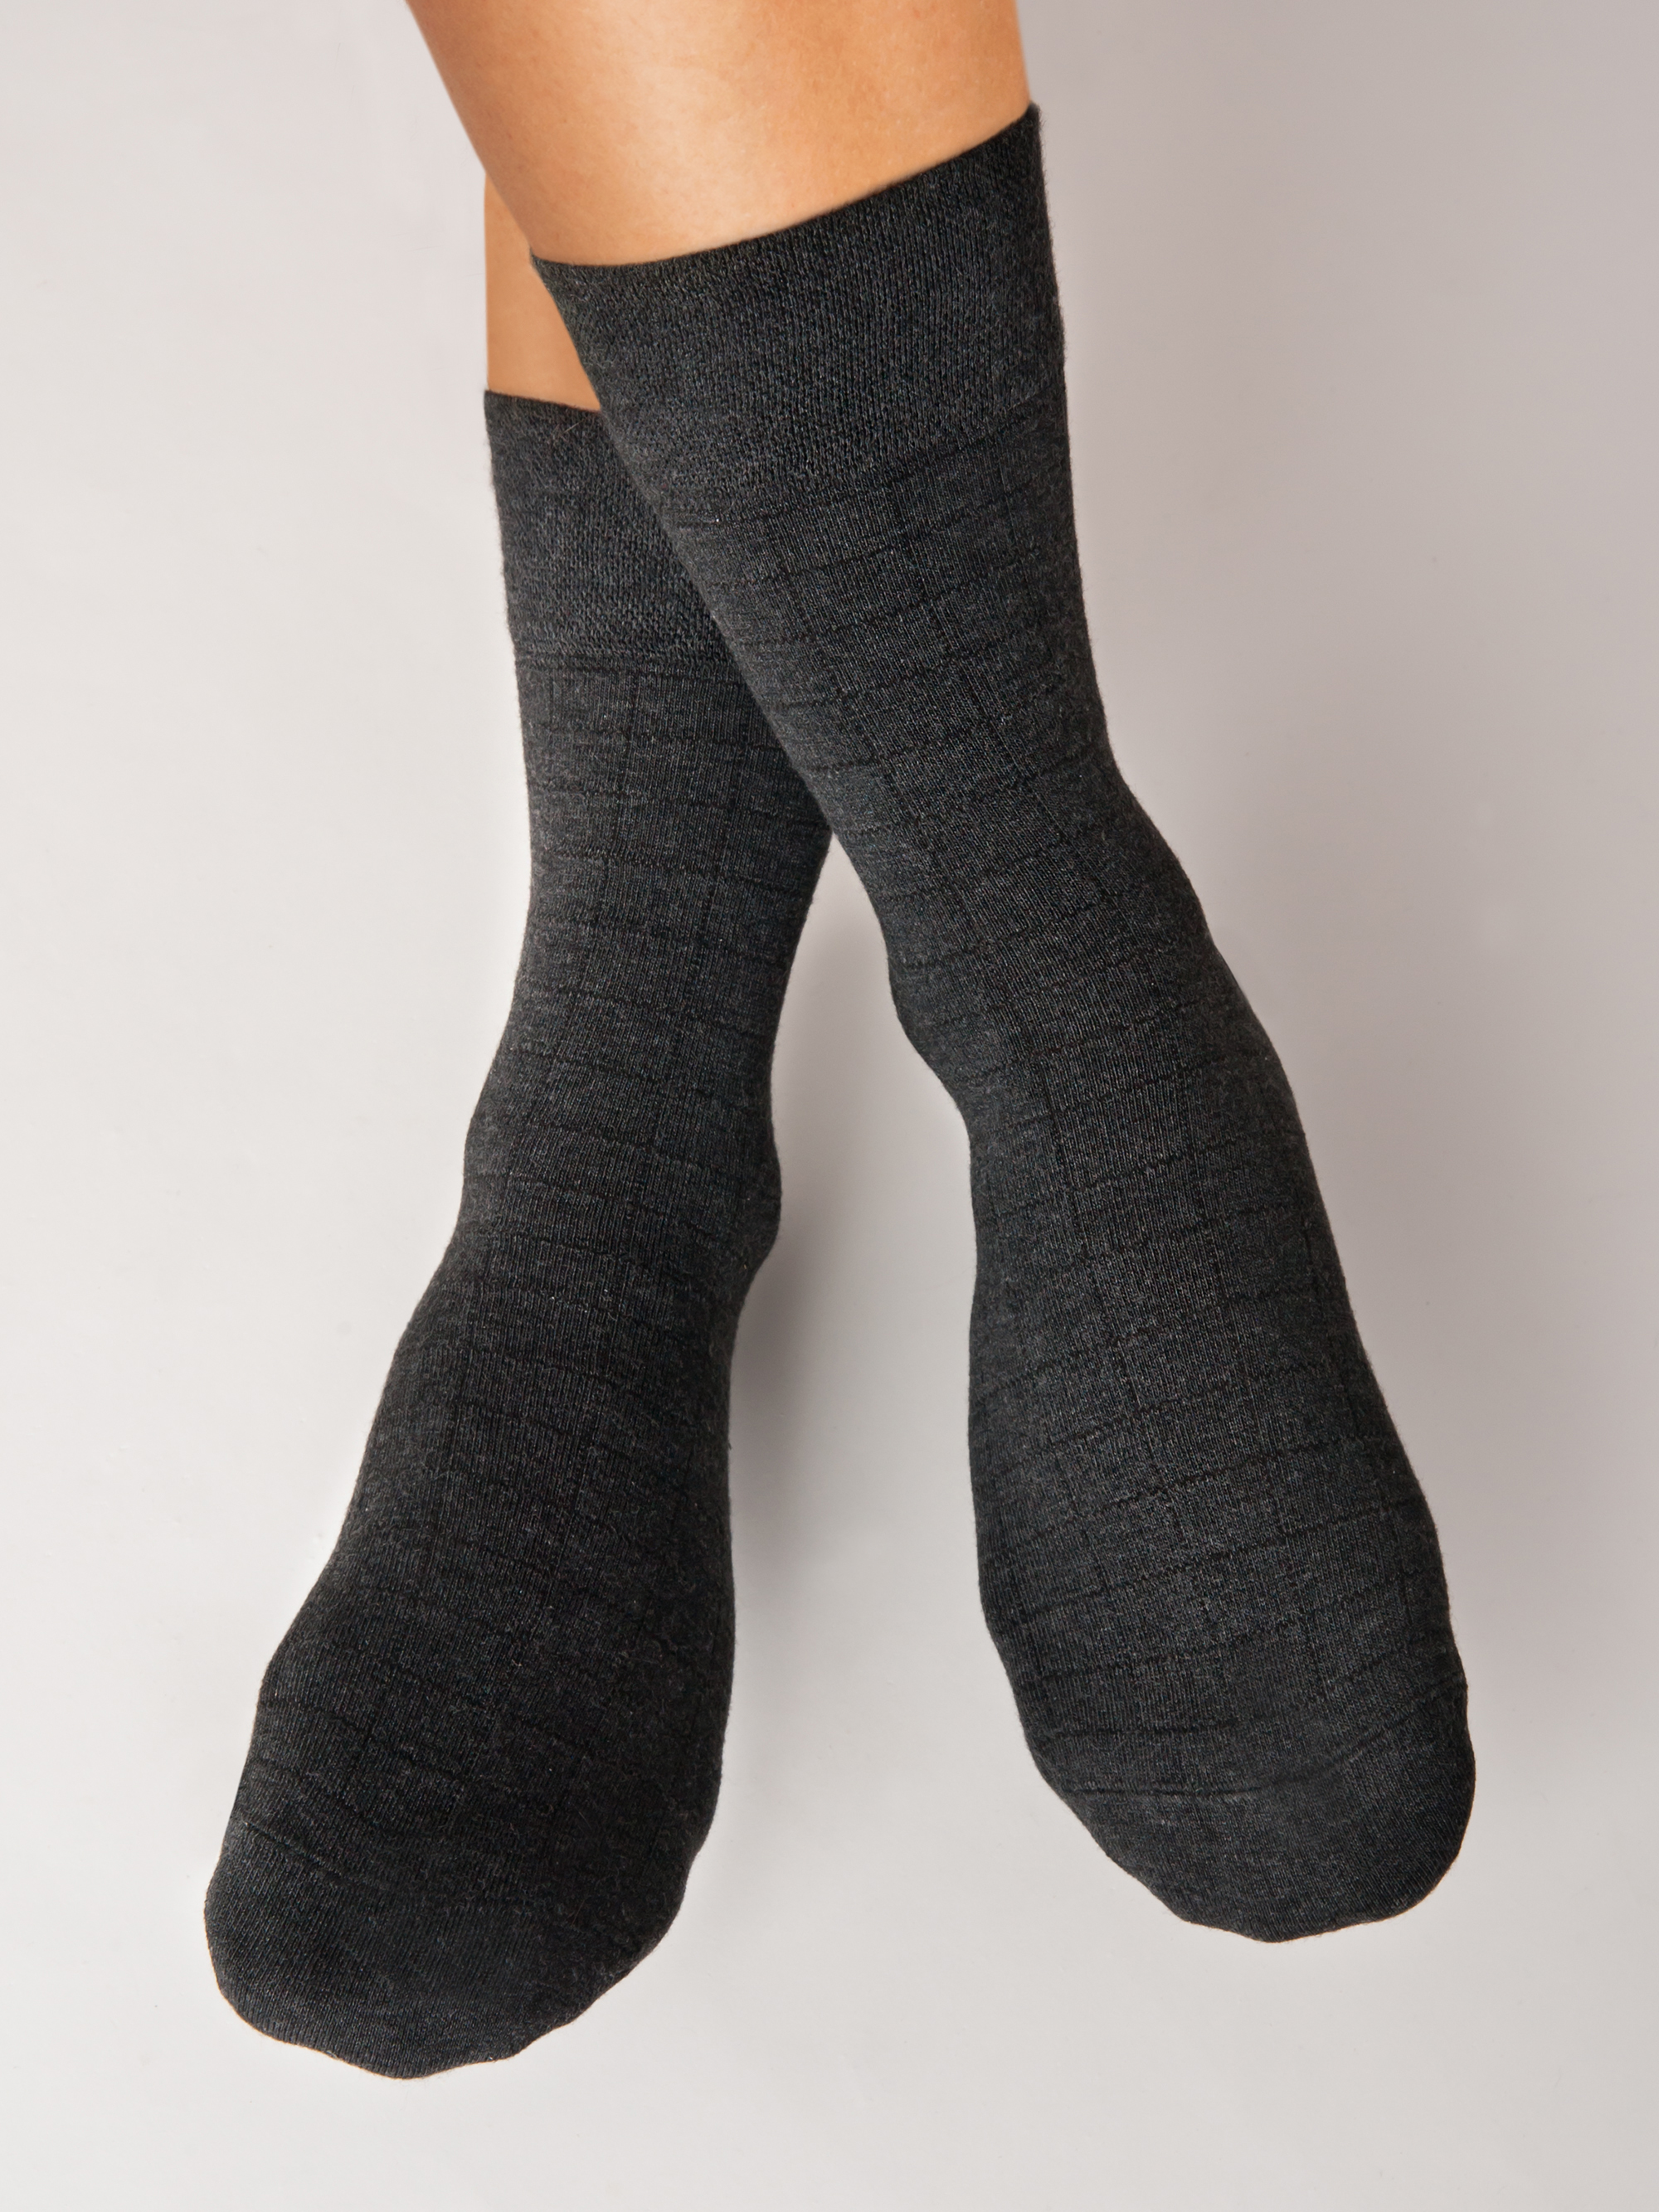 NOVITI Man's Socks SB004-M-06